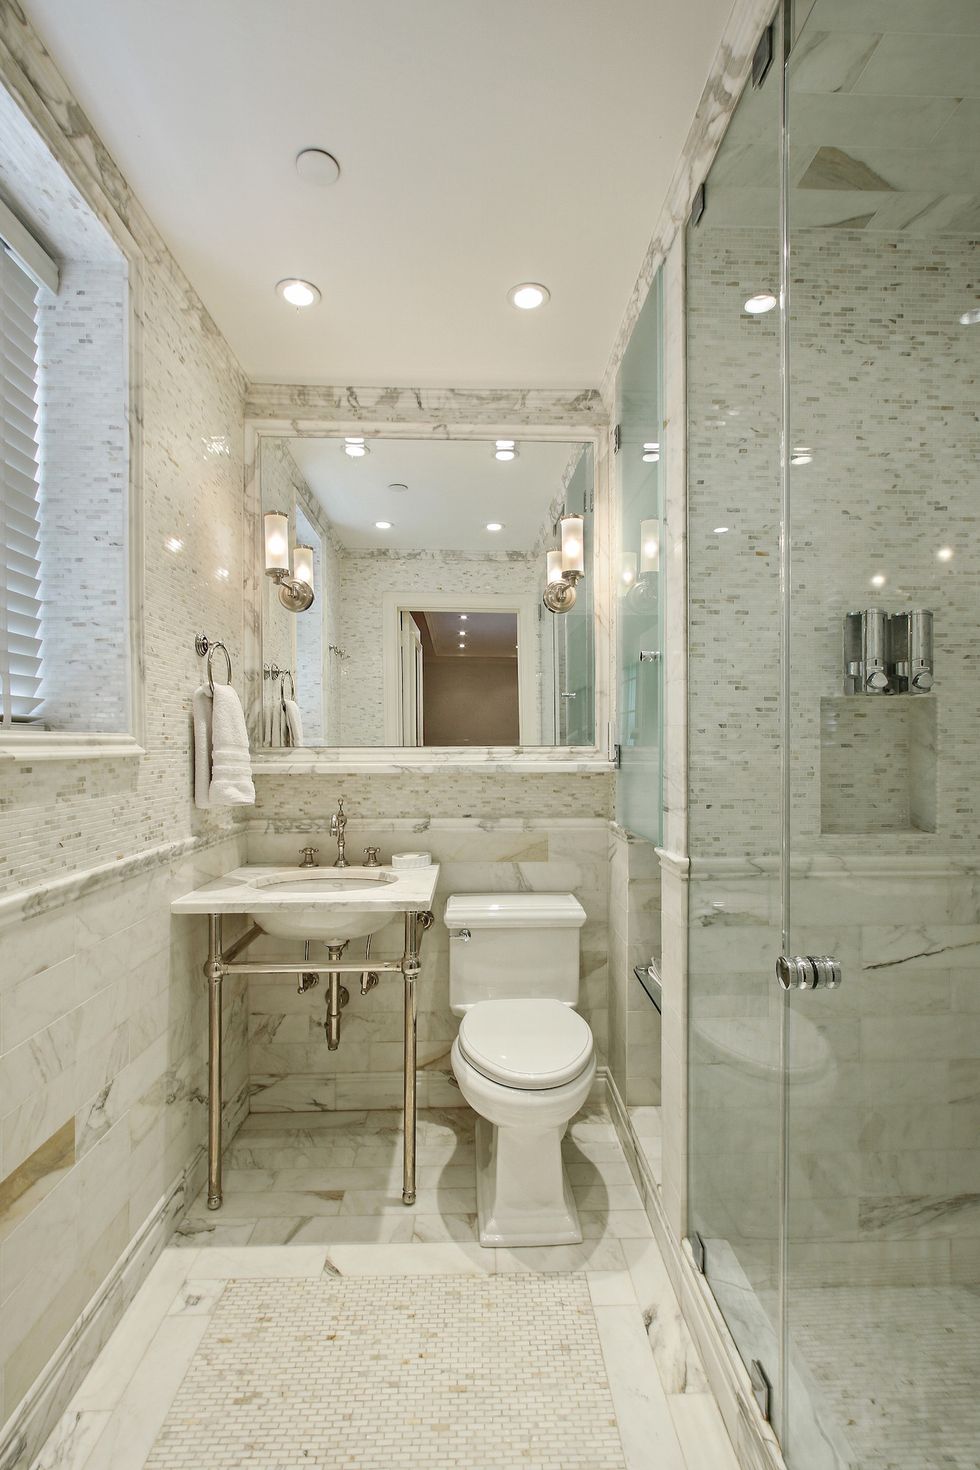 Bathroom, Property, Room, Interior design, Architecture, Ceiling, Plumbing fixture, Building, Tile, Floor, 